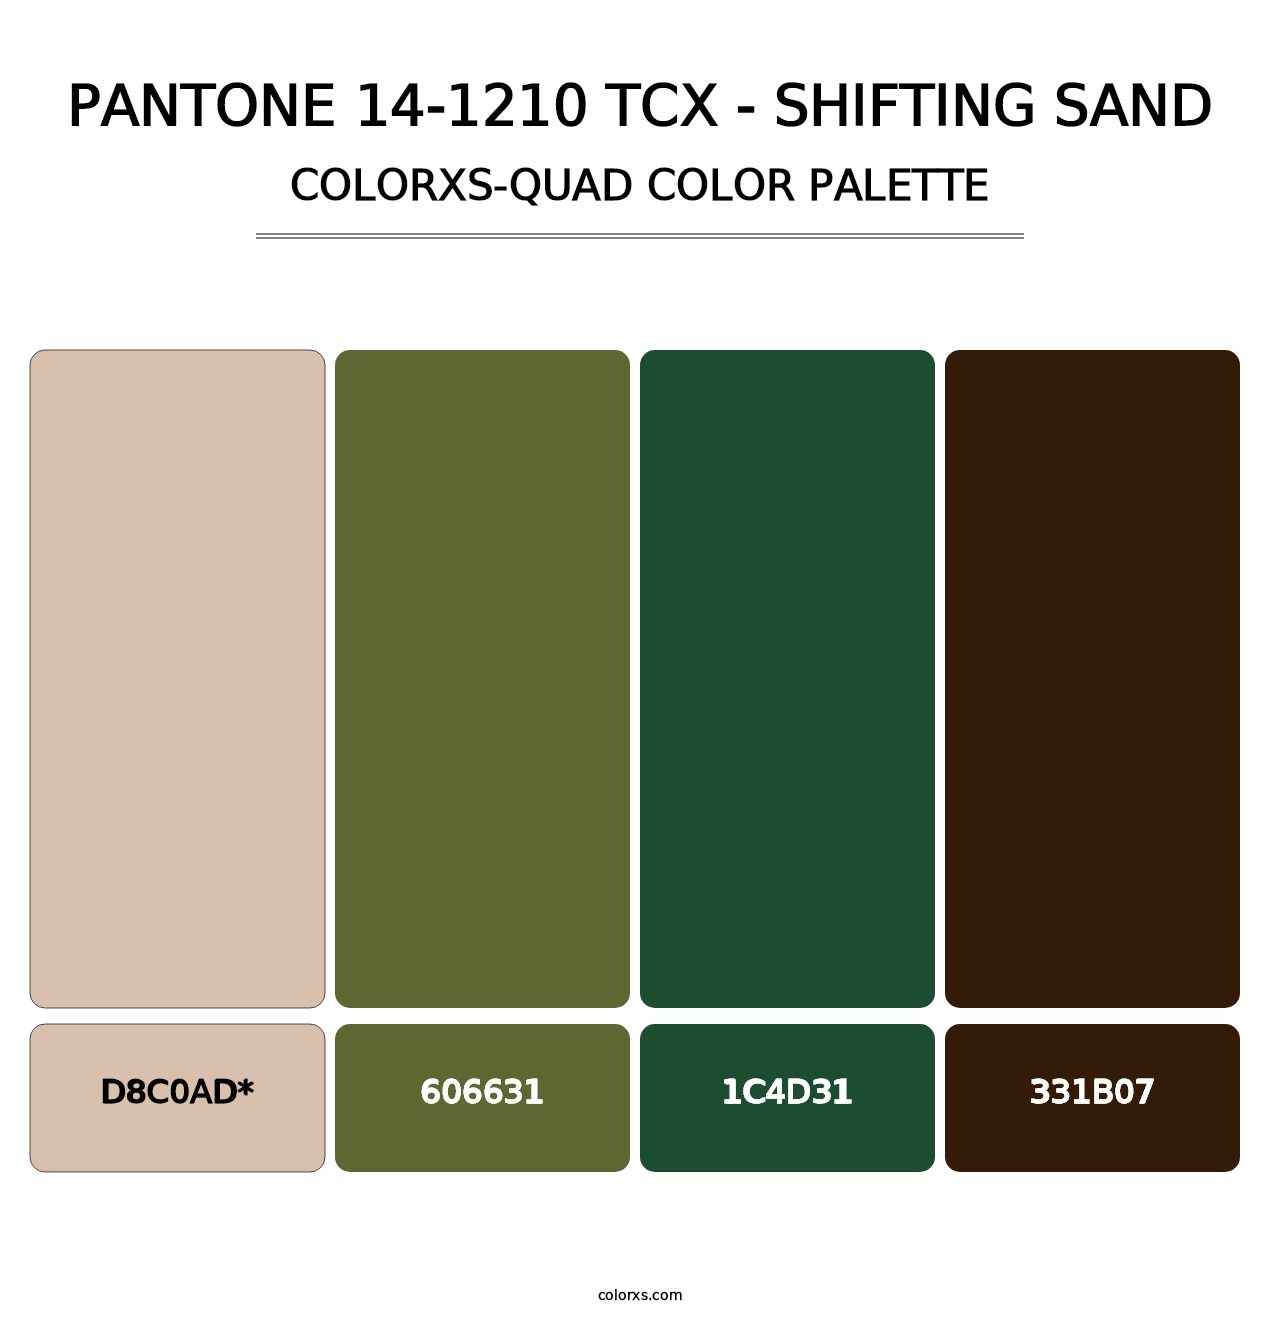 PANTONE 14-1210 TCX - Shifting Sand - Colorxs Quad Palette